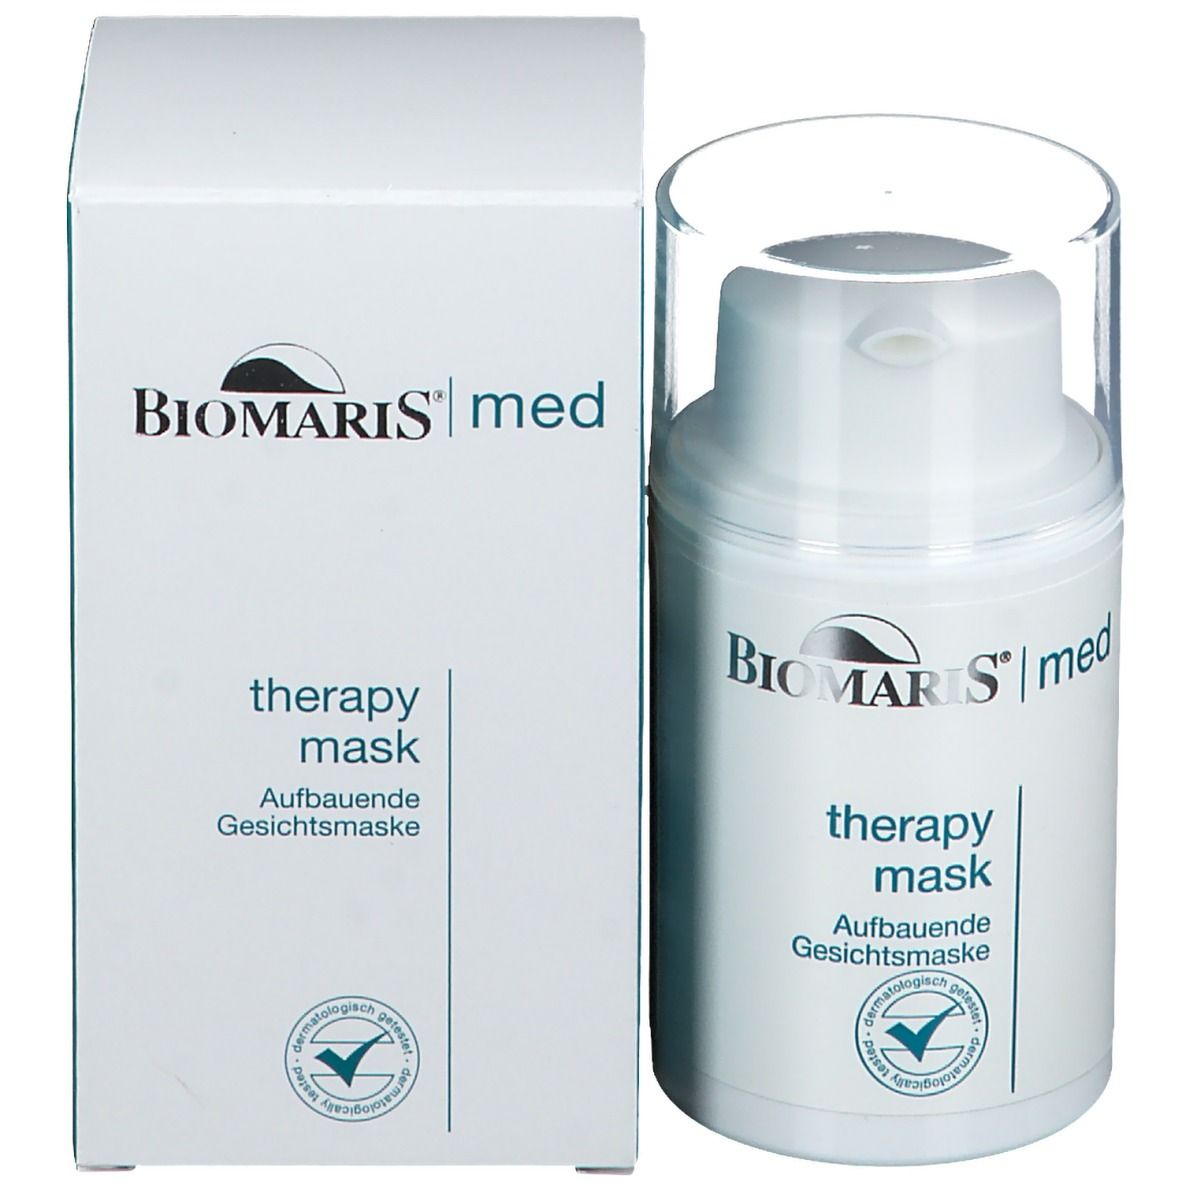 BIOMARIS® therapy mask med Gesichtsmaske